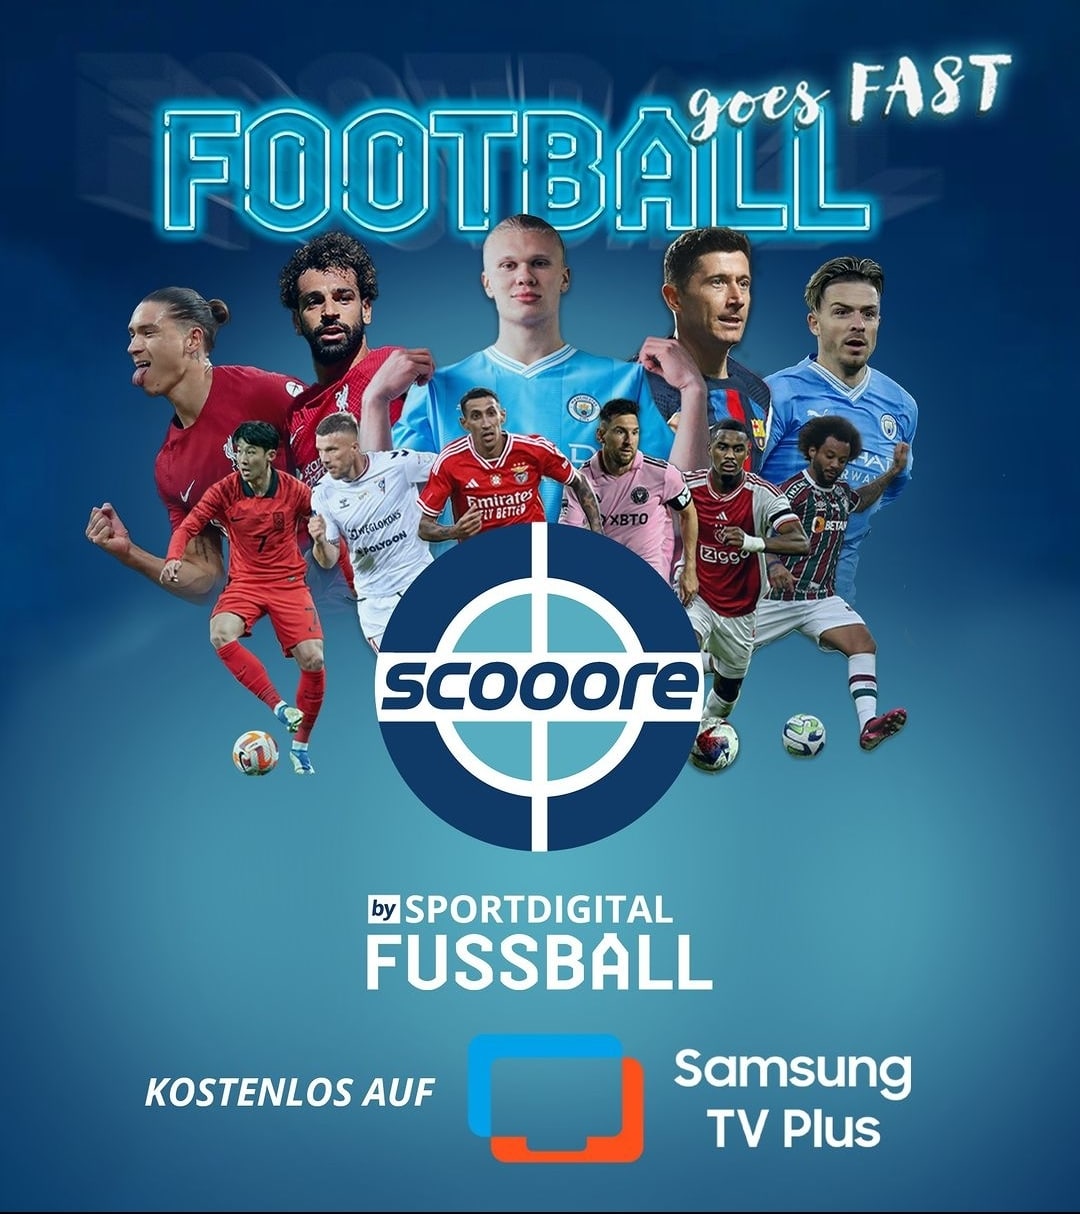 sportdigital-fussball-fast